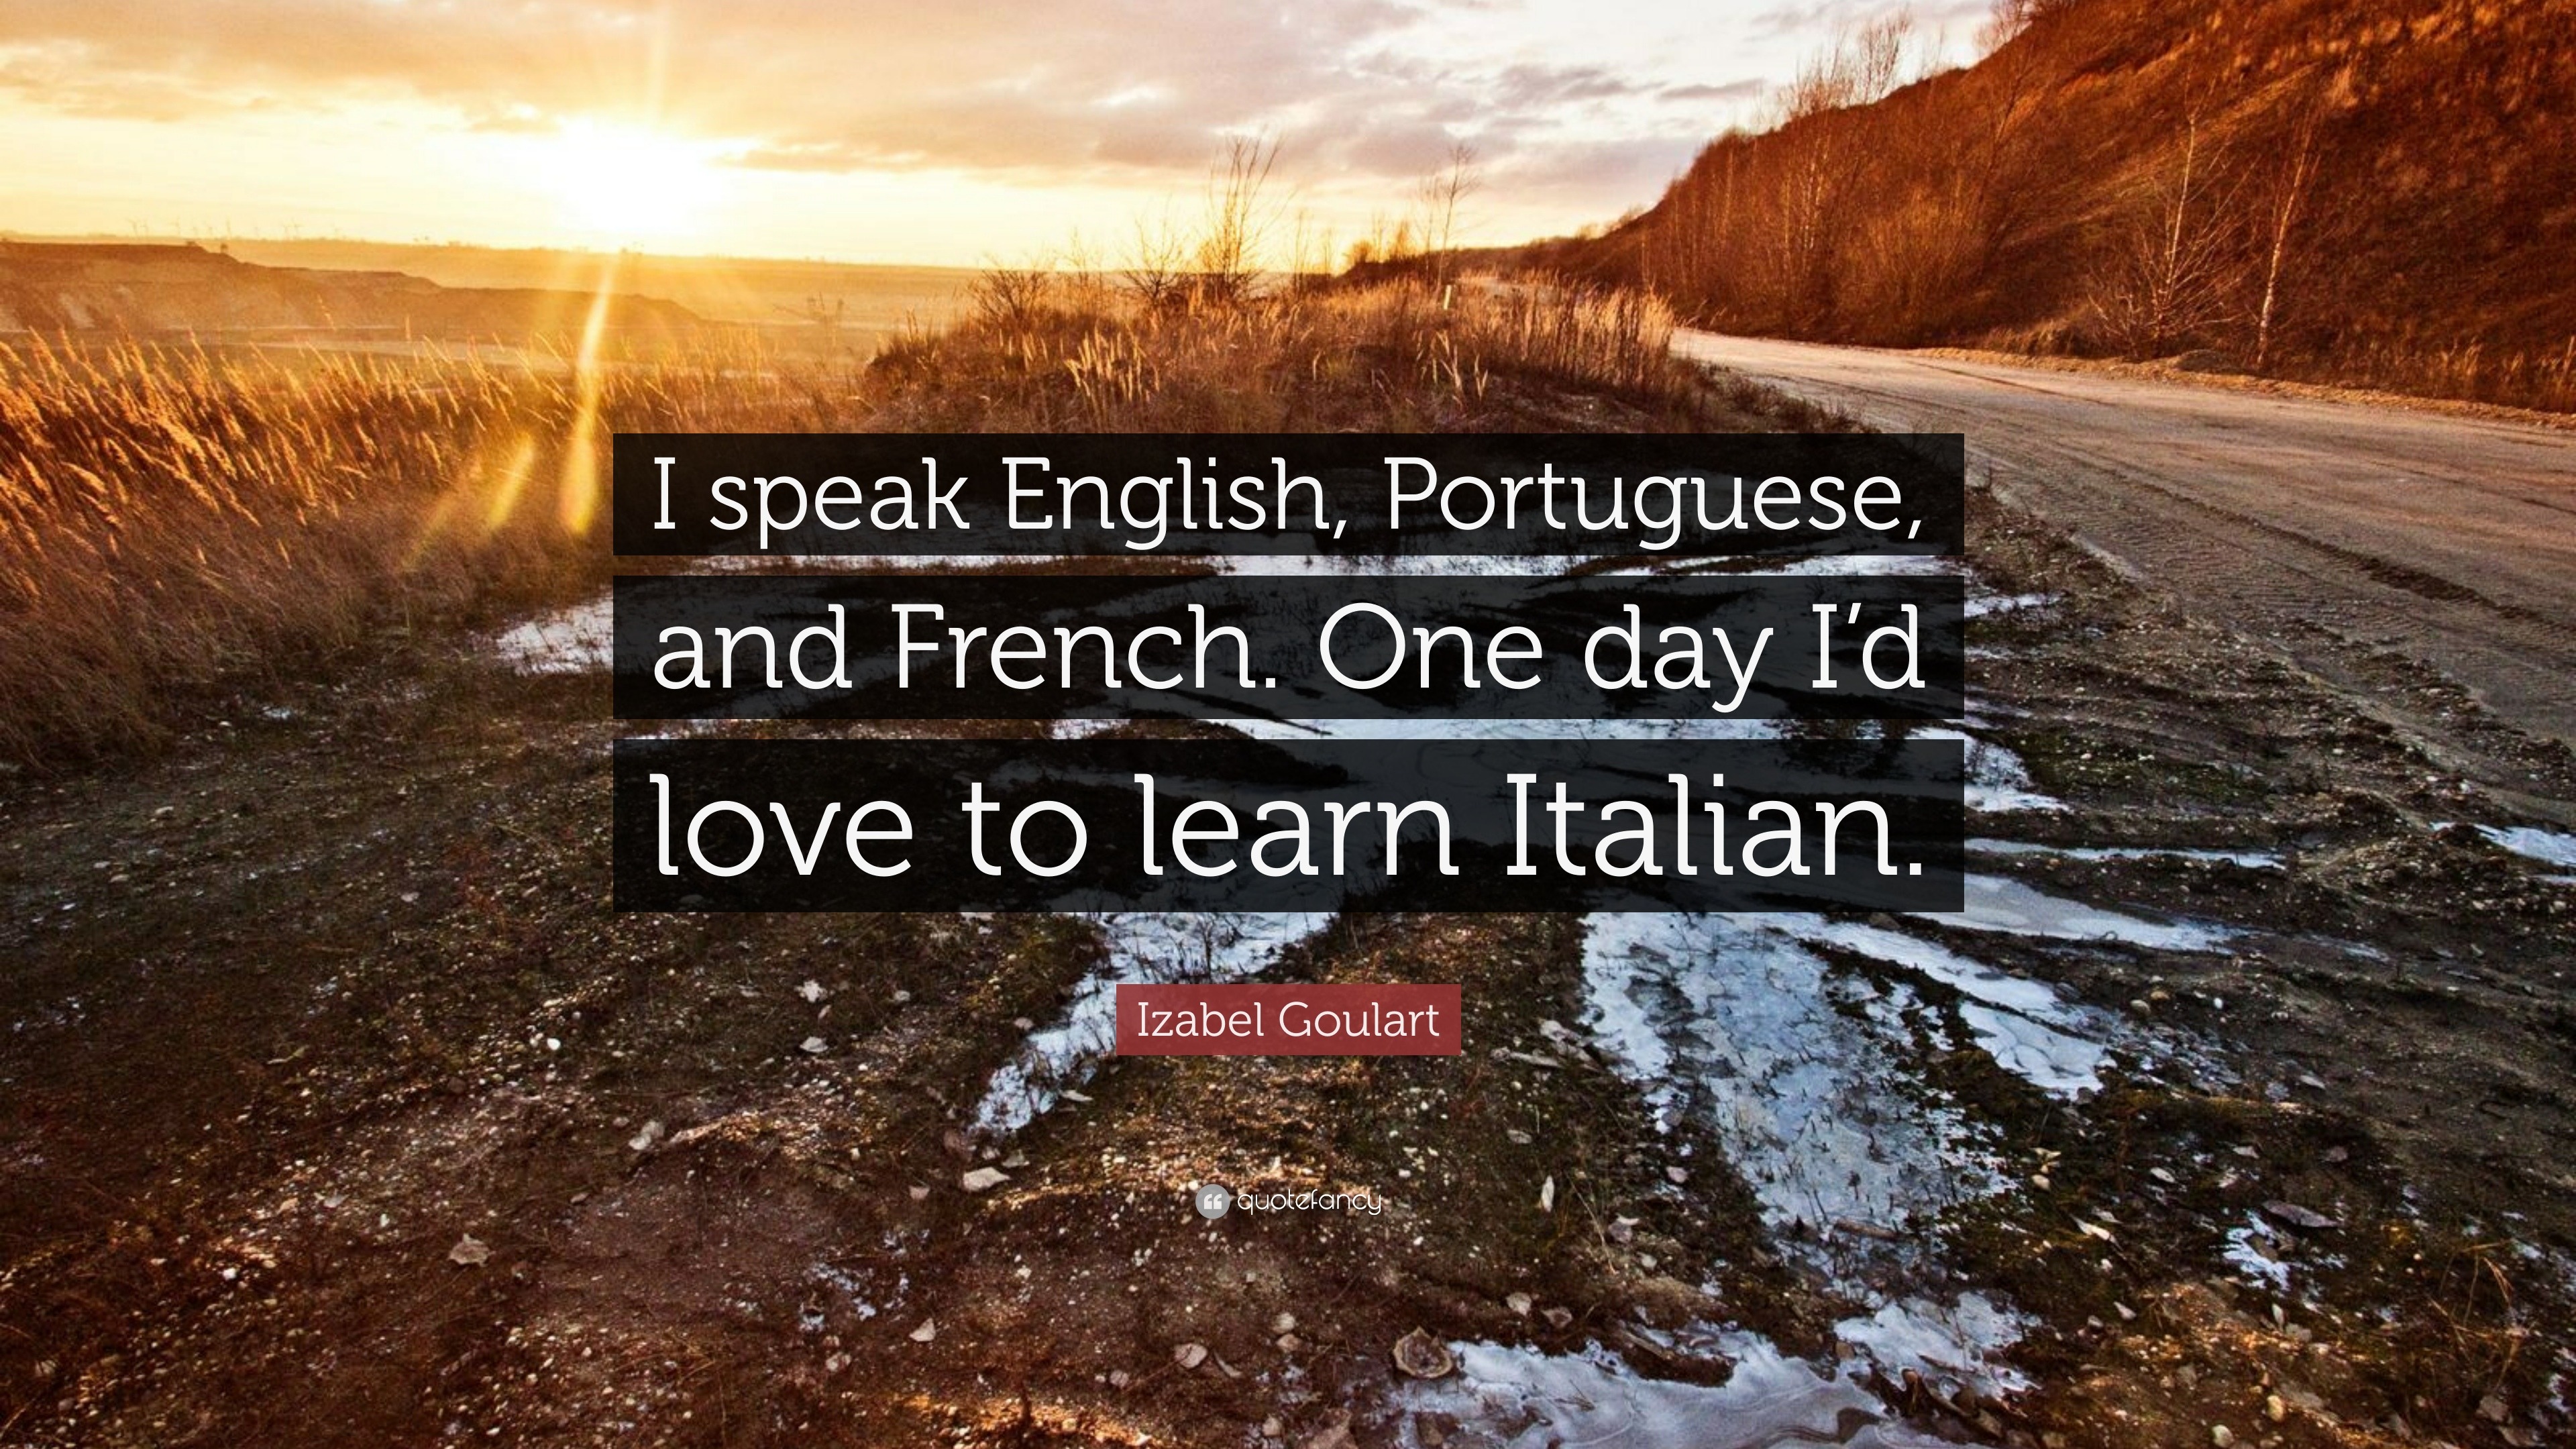 Izabel Goulart Quote “I speak English Portuguese and French e day